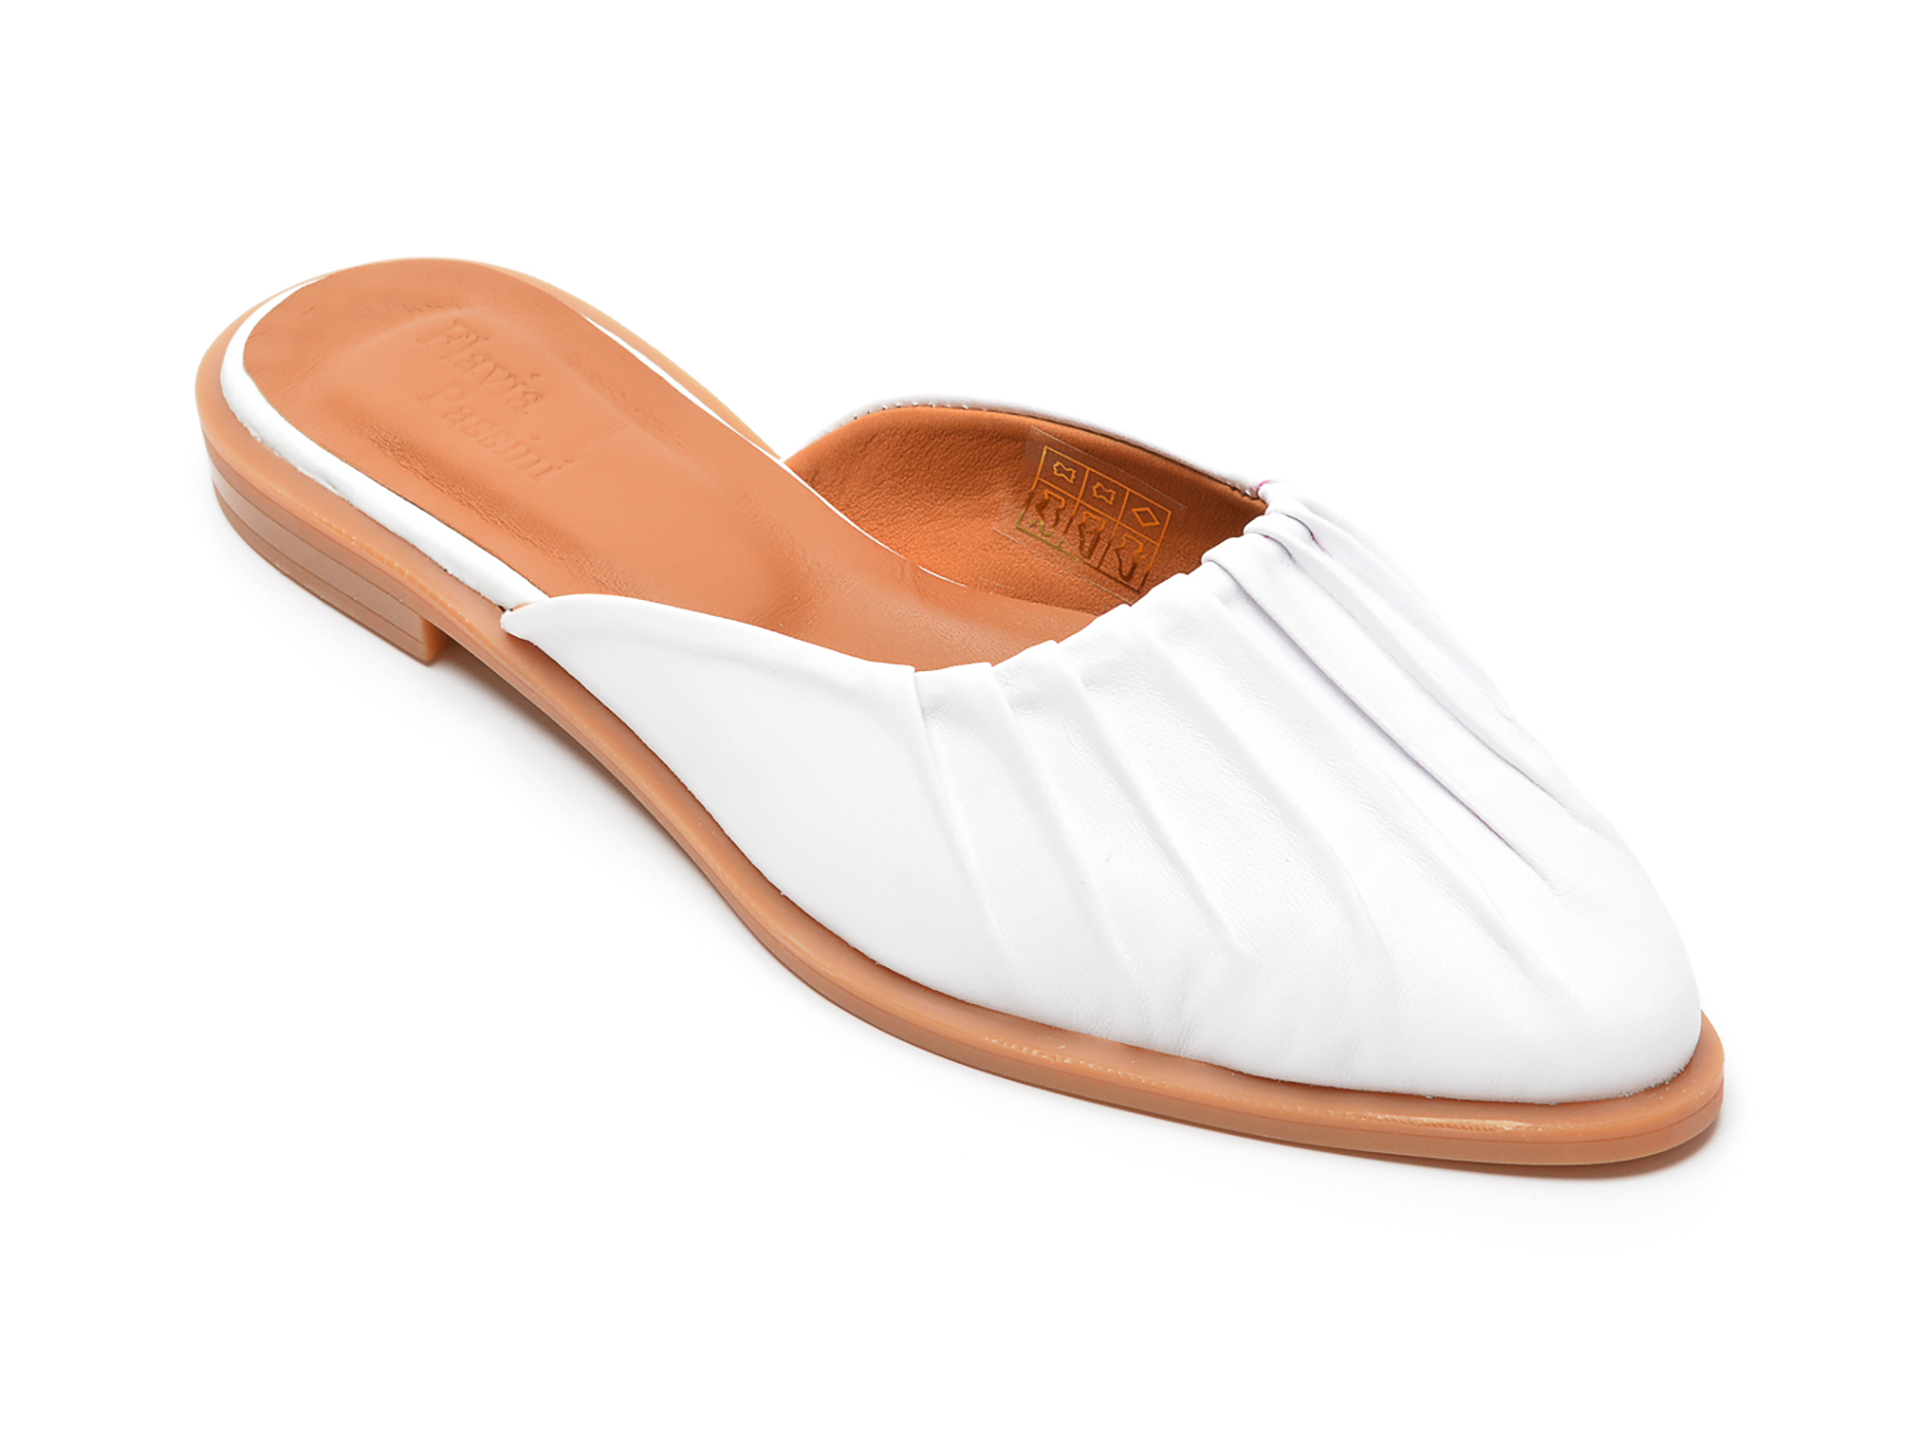 Papuci FLAVIA PASSINI albi, 22170, din piele naturala Flavia Passini